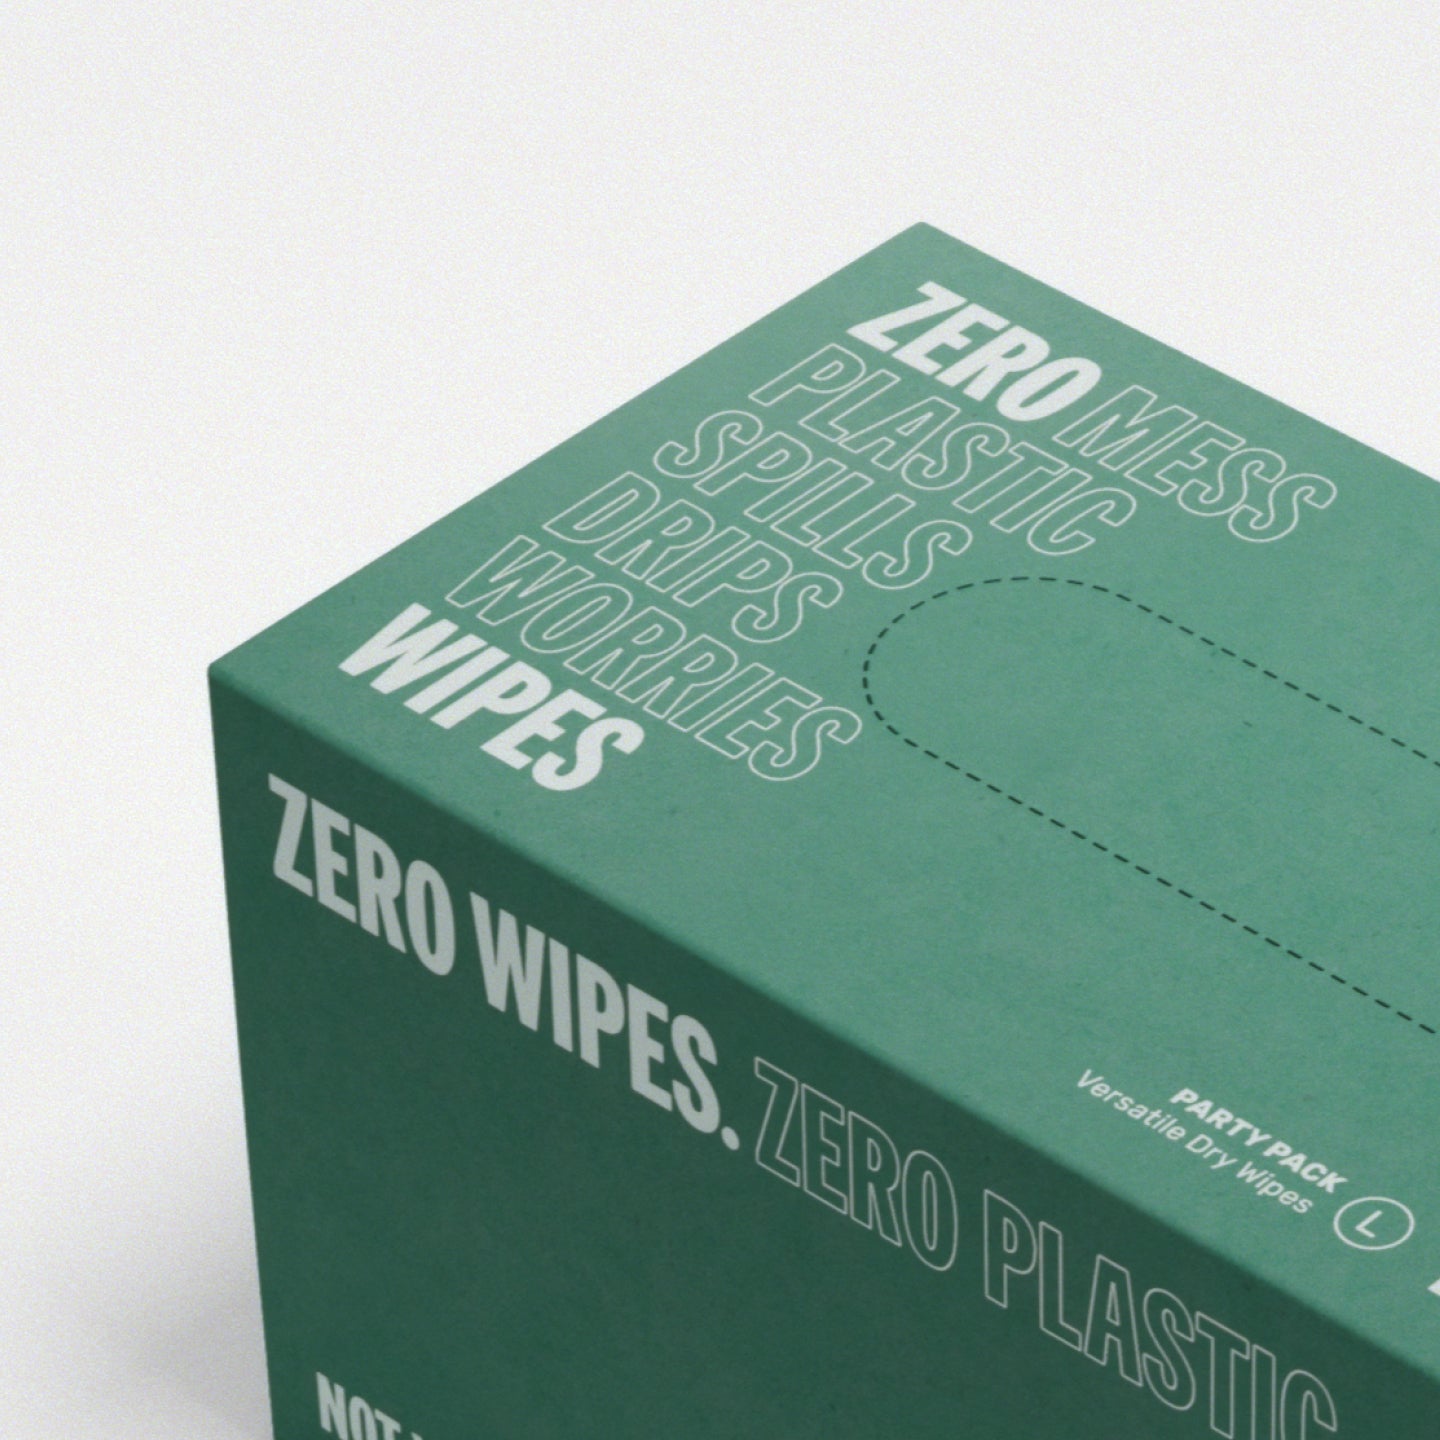 ZERO dry wipes